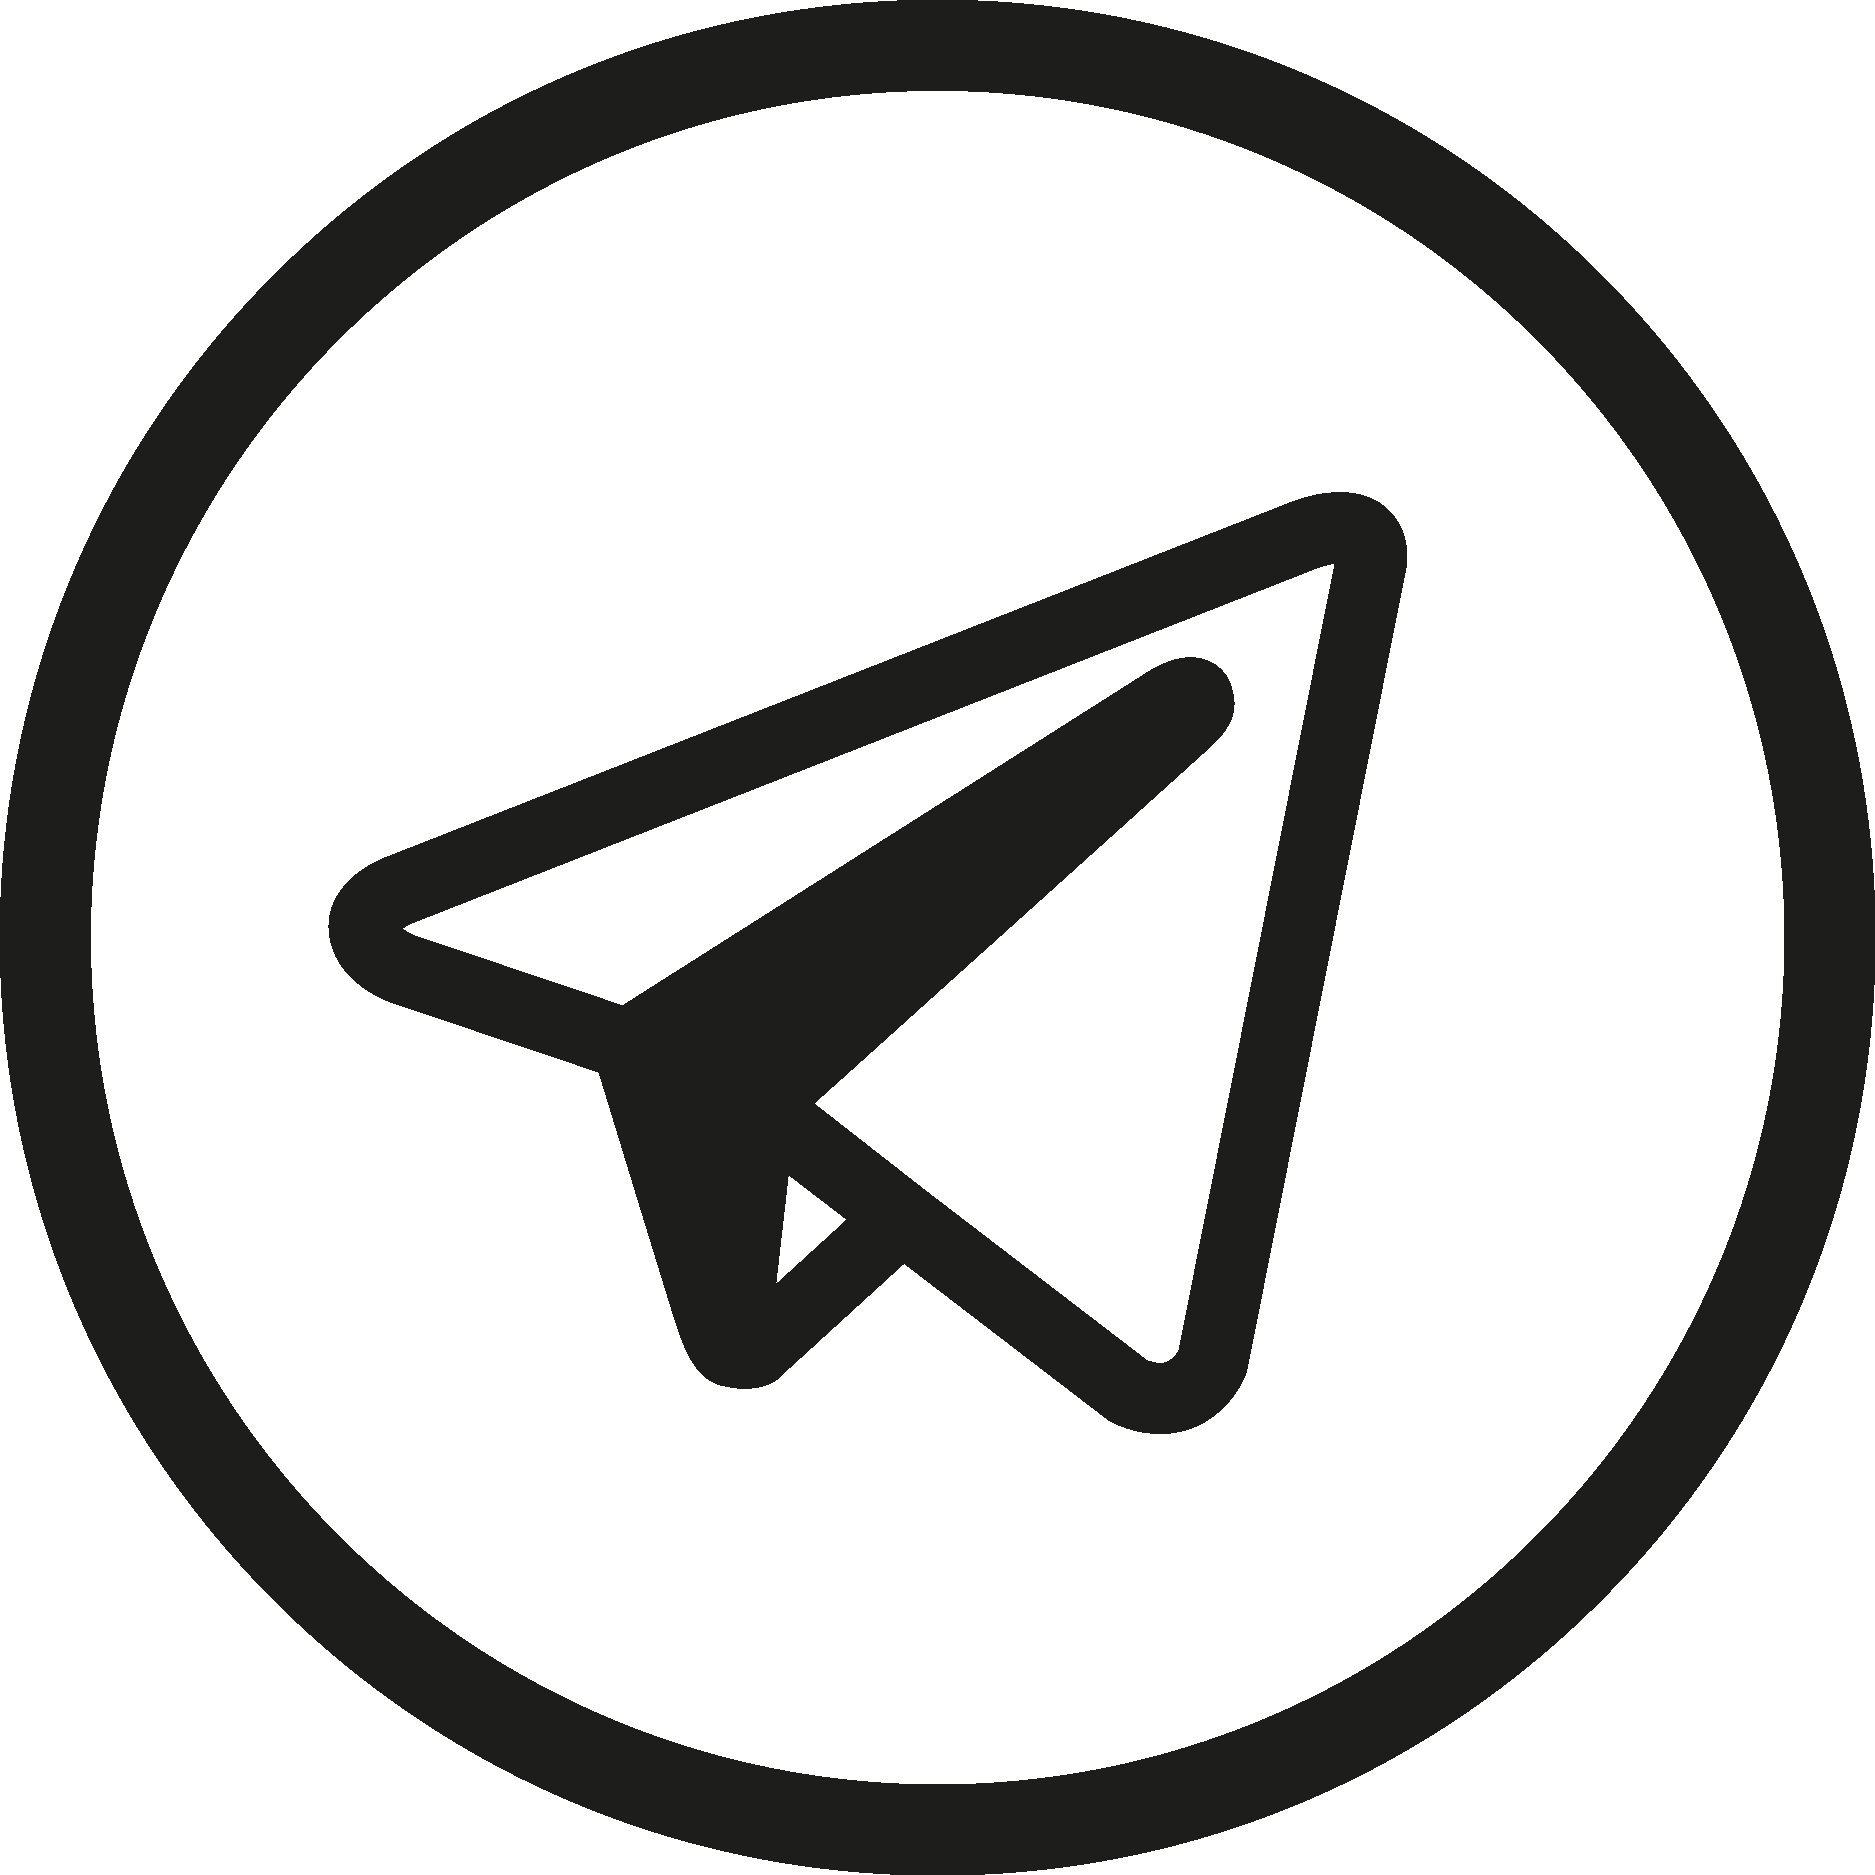 Telegram Logo Stock Illustrations – 1,735 Telegram Logo Stock  Illustrations, Vectors & Clipart - Dreamstime